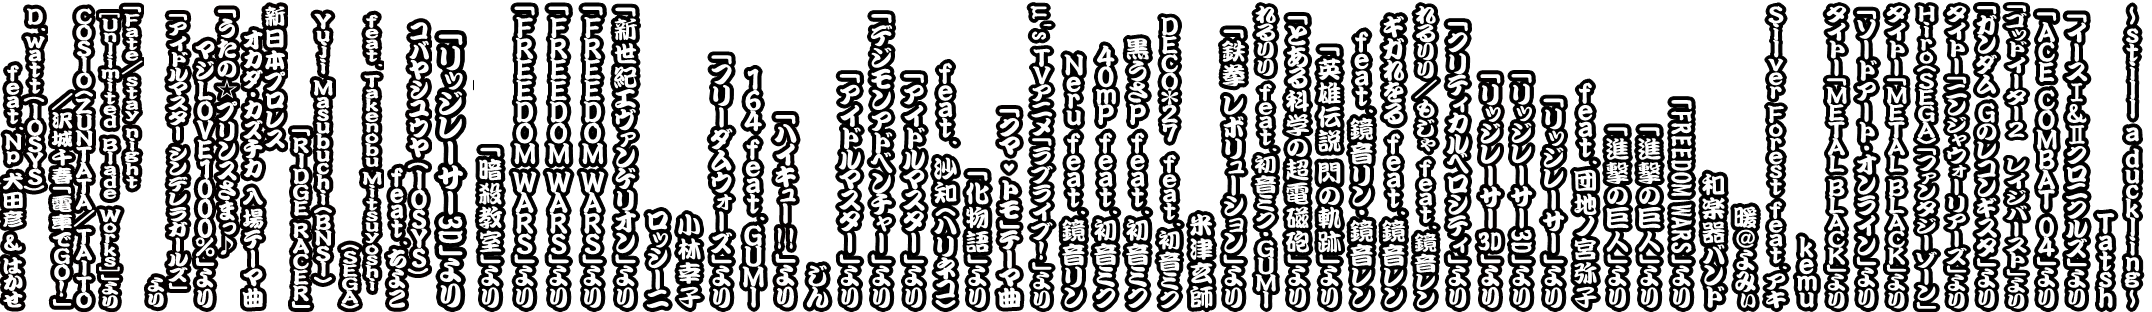 Taiko no Tatsujin: V Version - Selected Song Sub-text